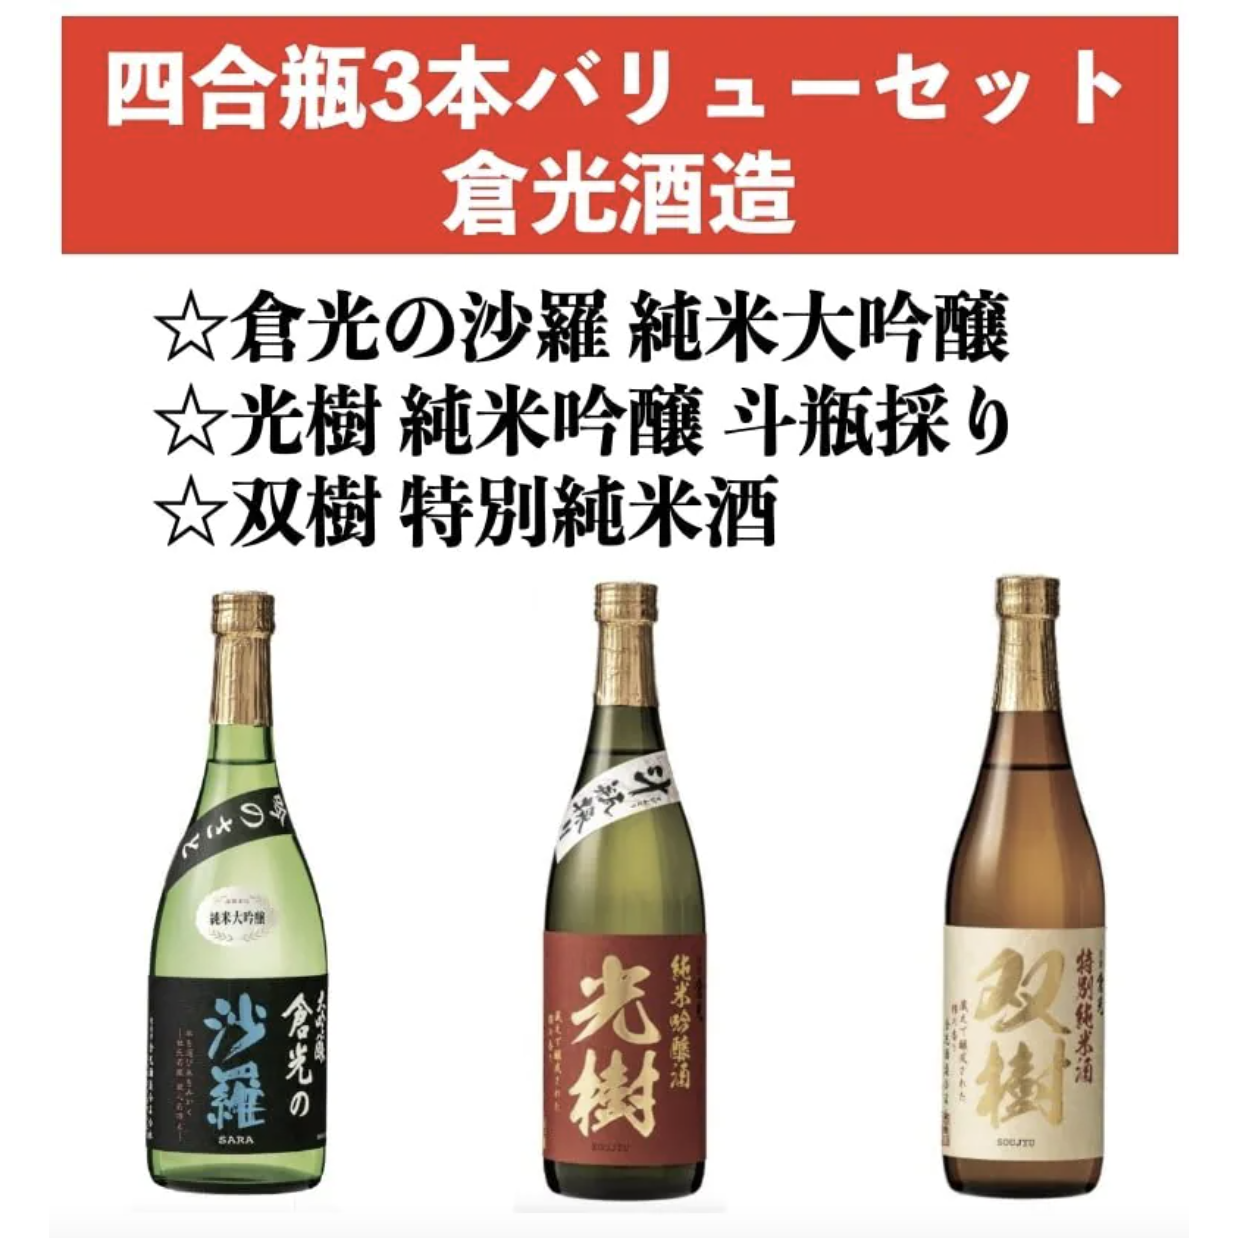 日本酒しごうびん セット新品